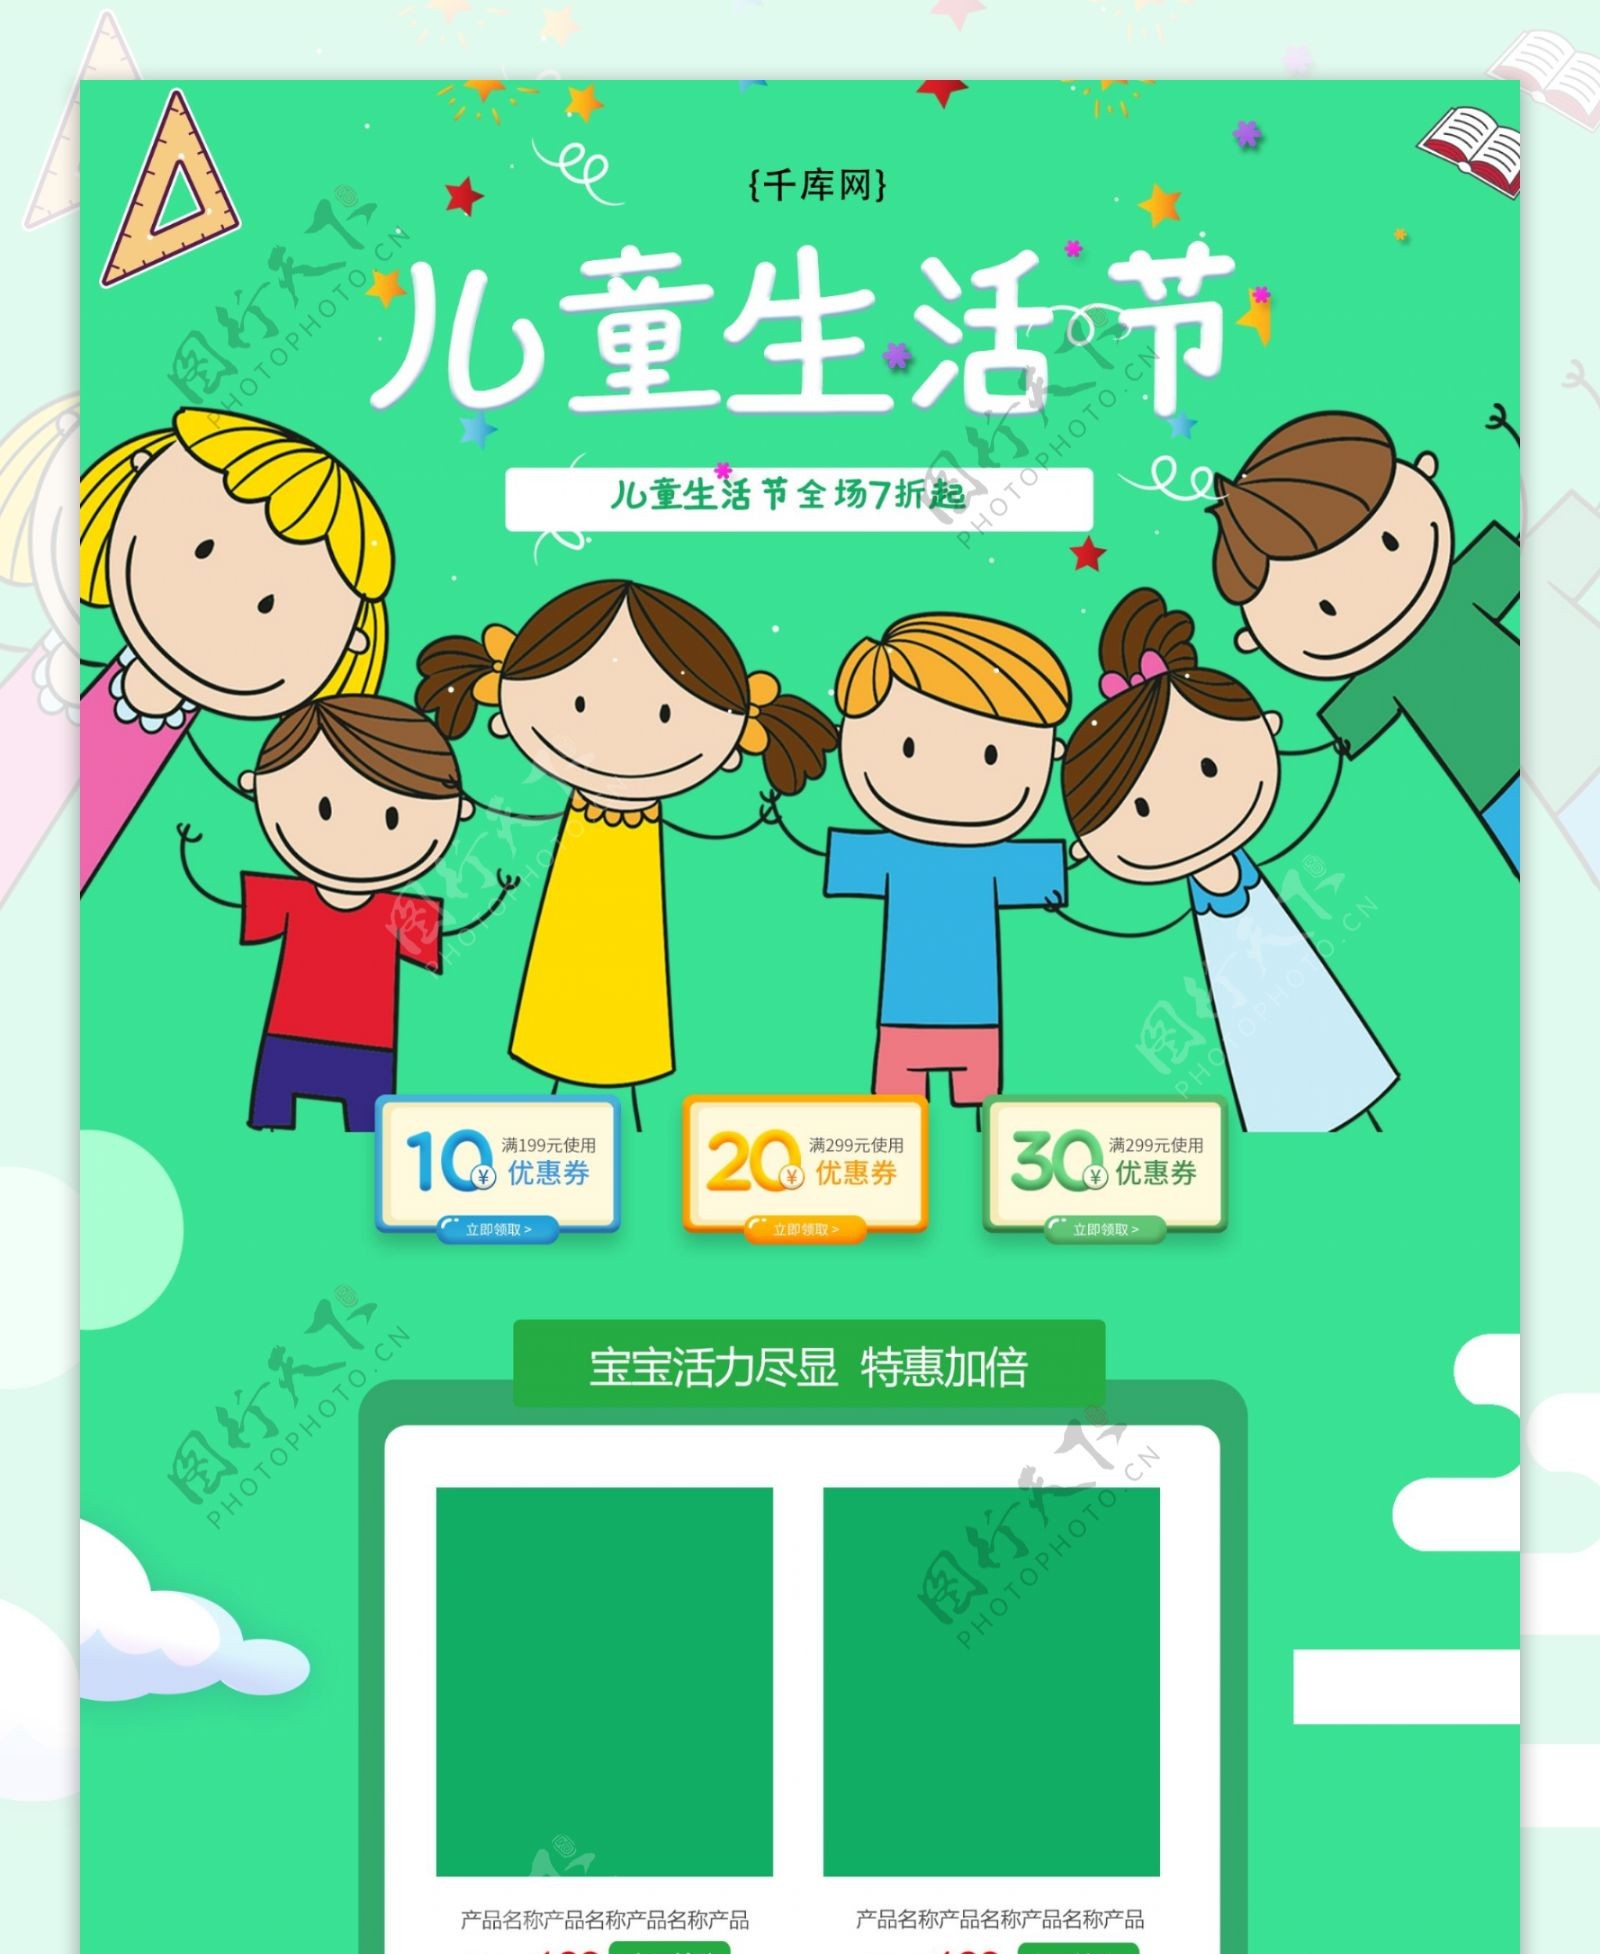 儿童生活节绿色可爱清新电商首页模板